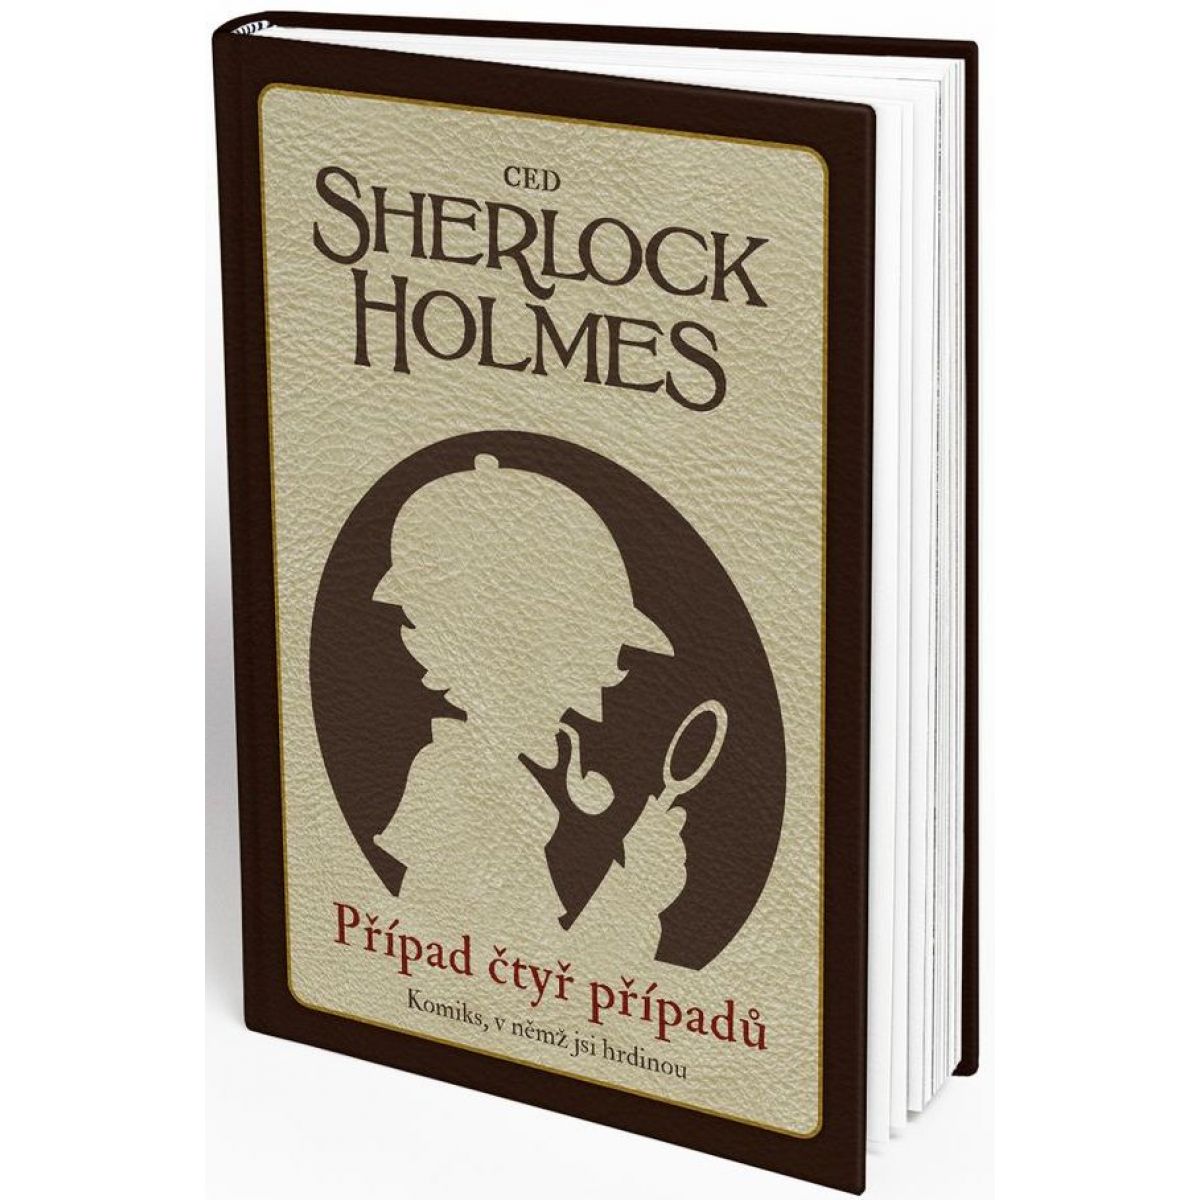 REXhry Komiks, v ktorom si hrdinom Sherlock Holmes Prípad štyroch prípadov